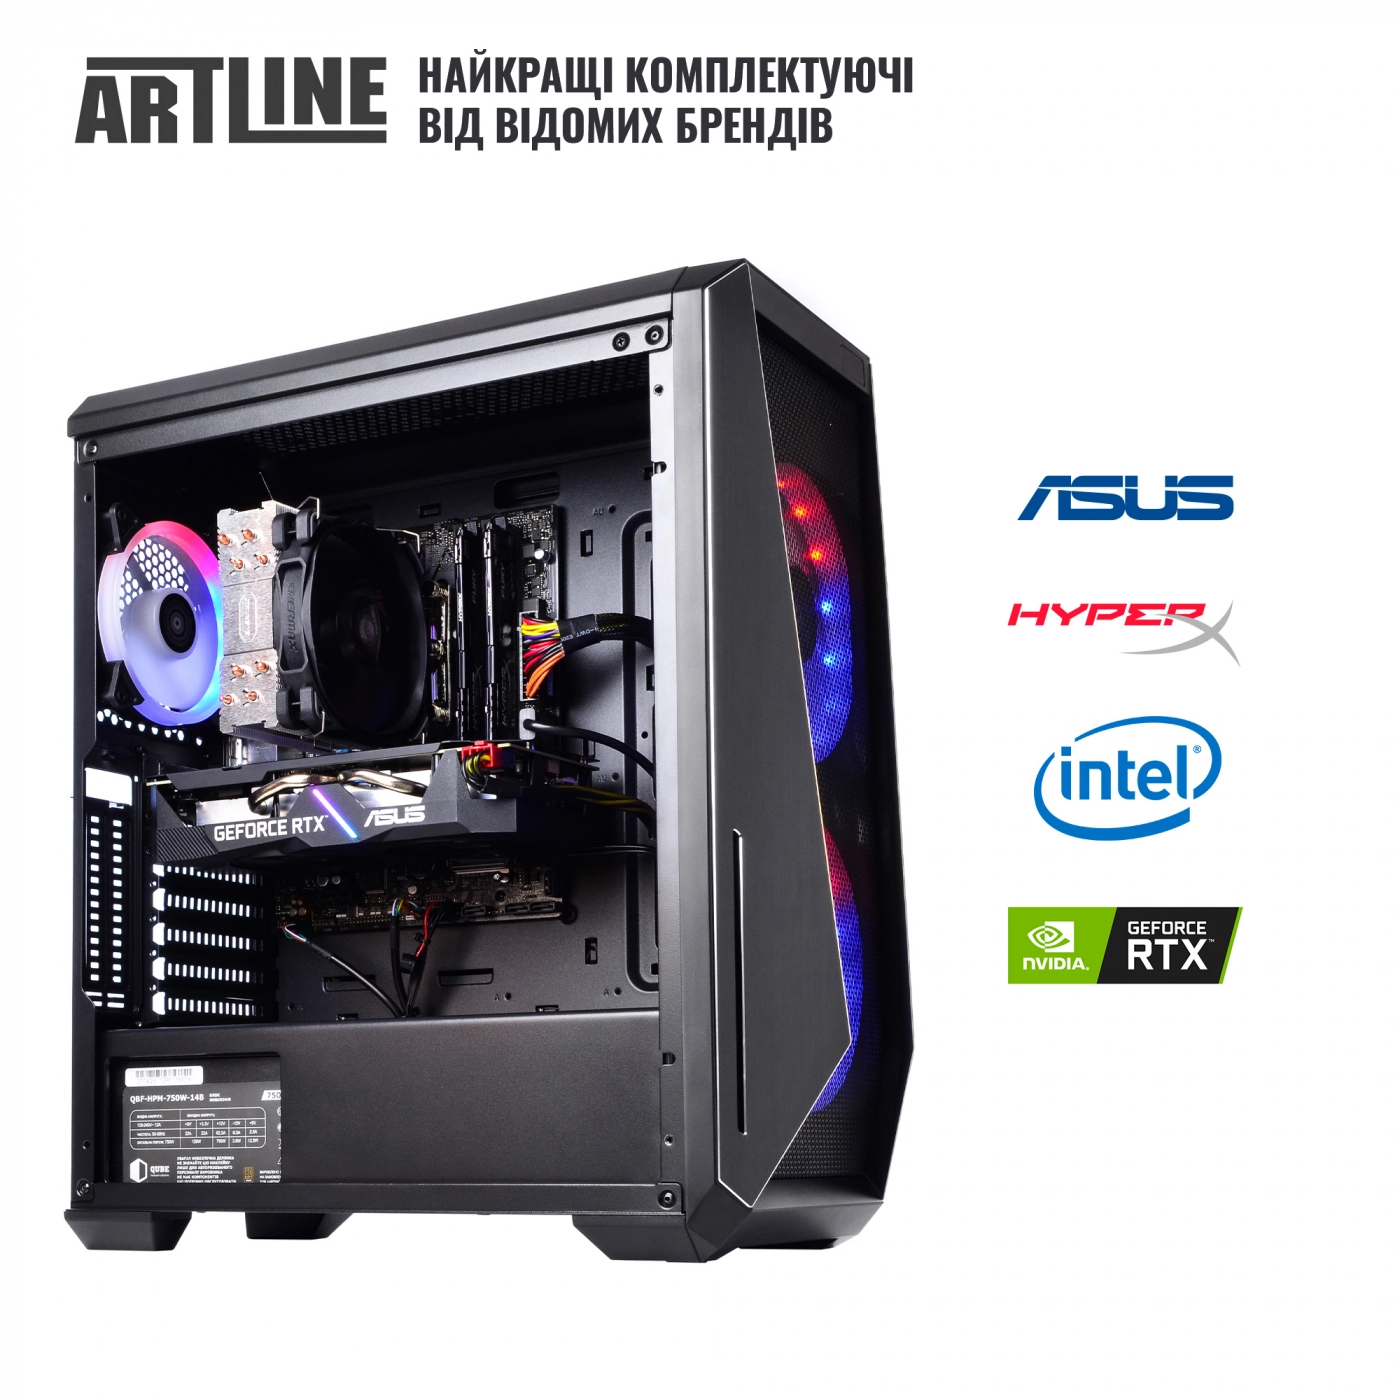 Купить Компьютер ARTLINE Gaming X90v07 - фото 6